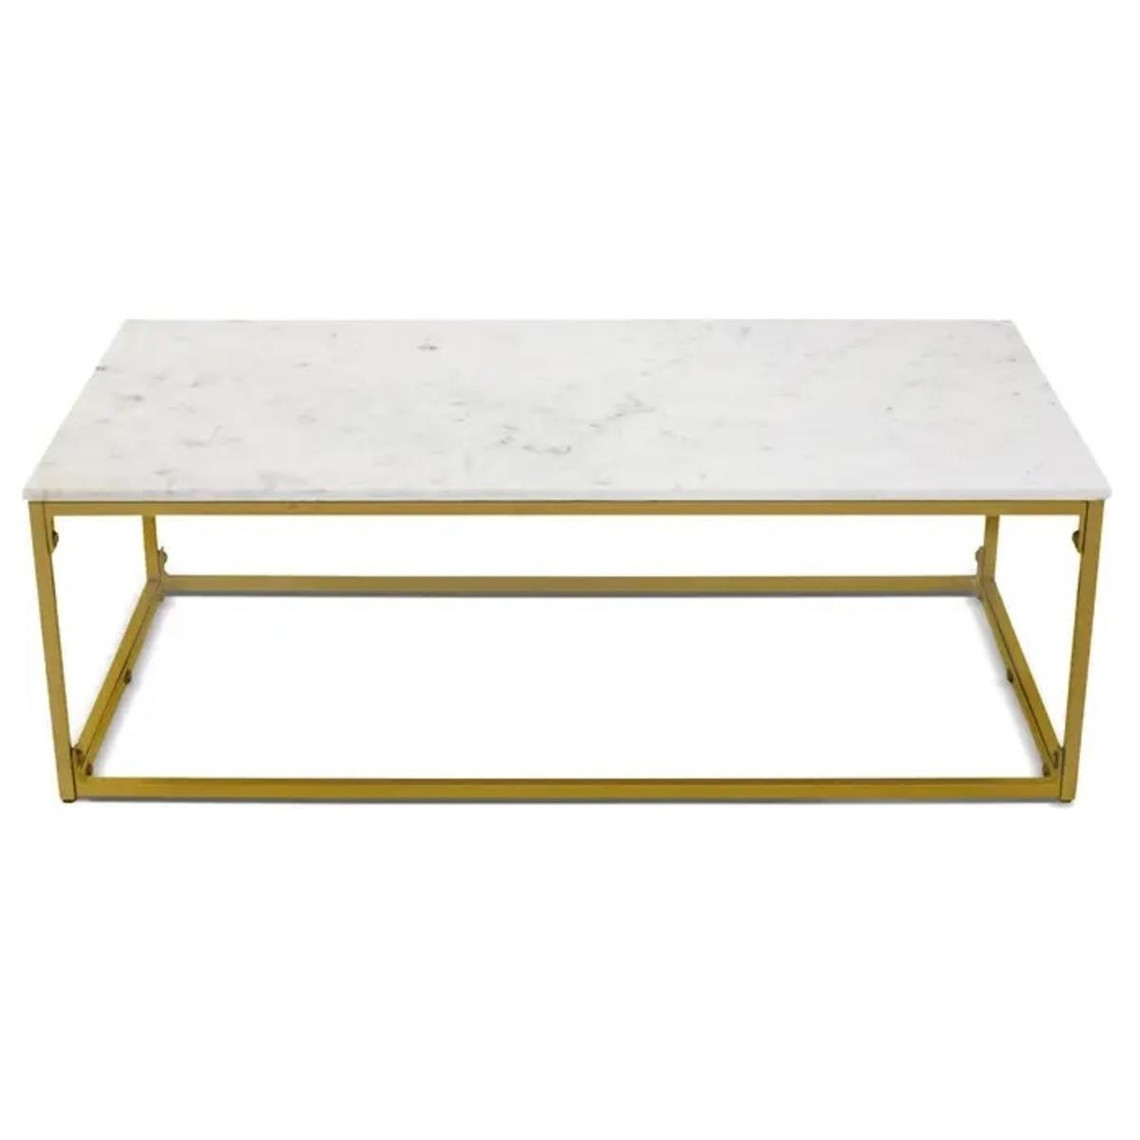 Table basse rectangulaire KALIKOR Pierre effet marbre blanc et Métal Or